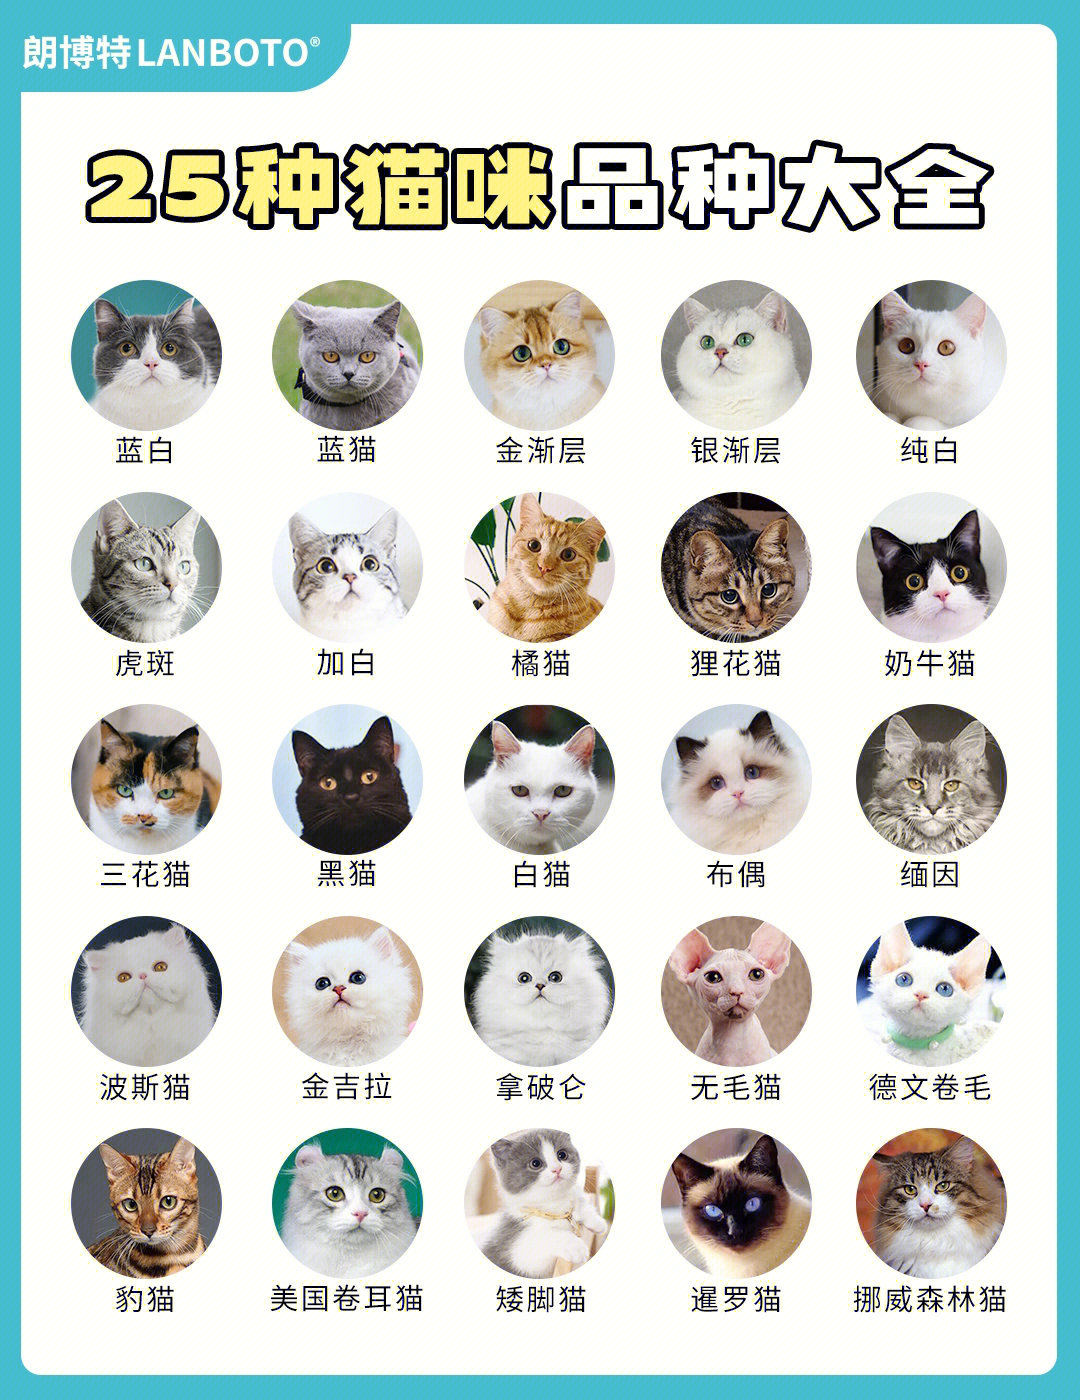 25种猫咪图鉴大全你最想养哪一个